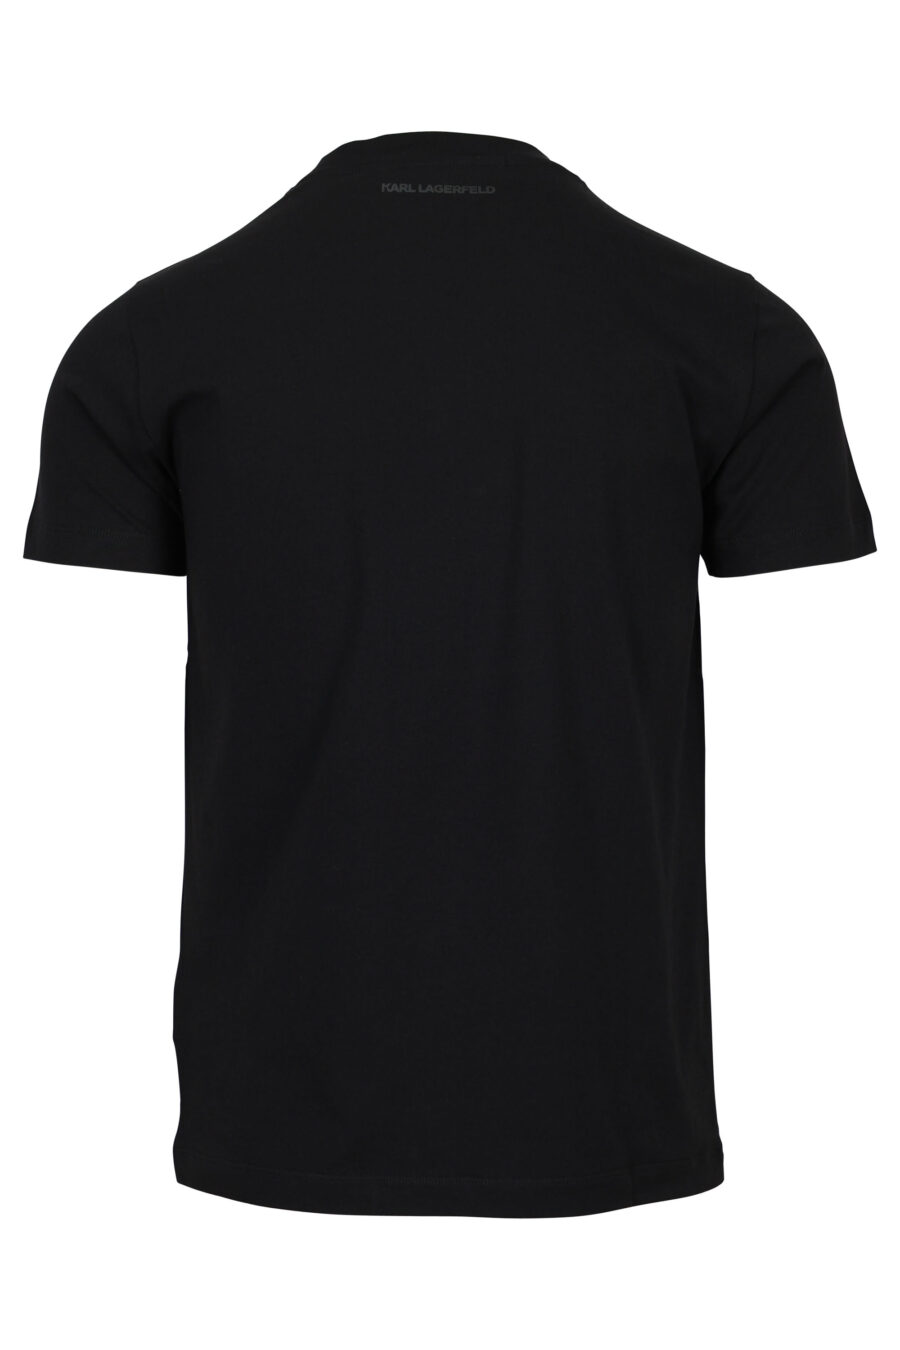 Camiseta negra con maxilogo "rue st guillaume" en degradé - 4062226962438 1